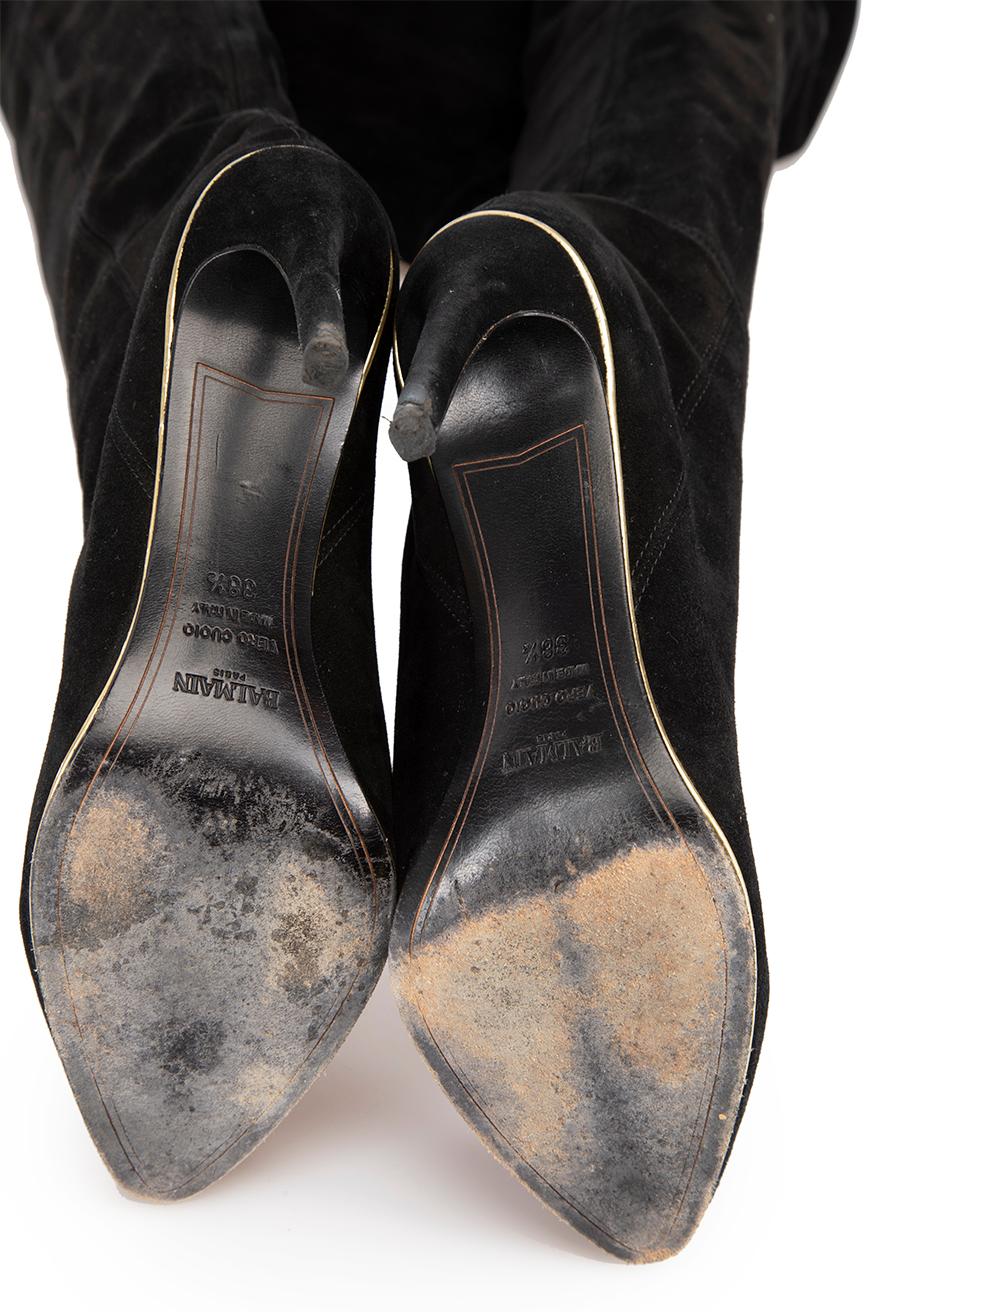 Balmain Women's Black Suede Thigh High Heeled Boots 2